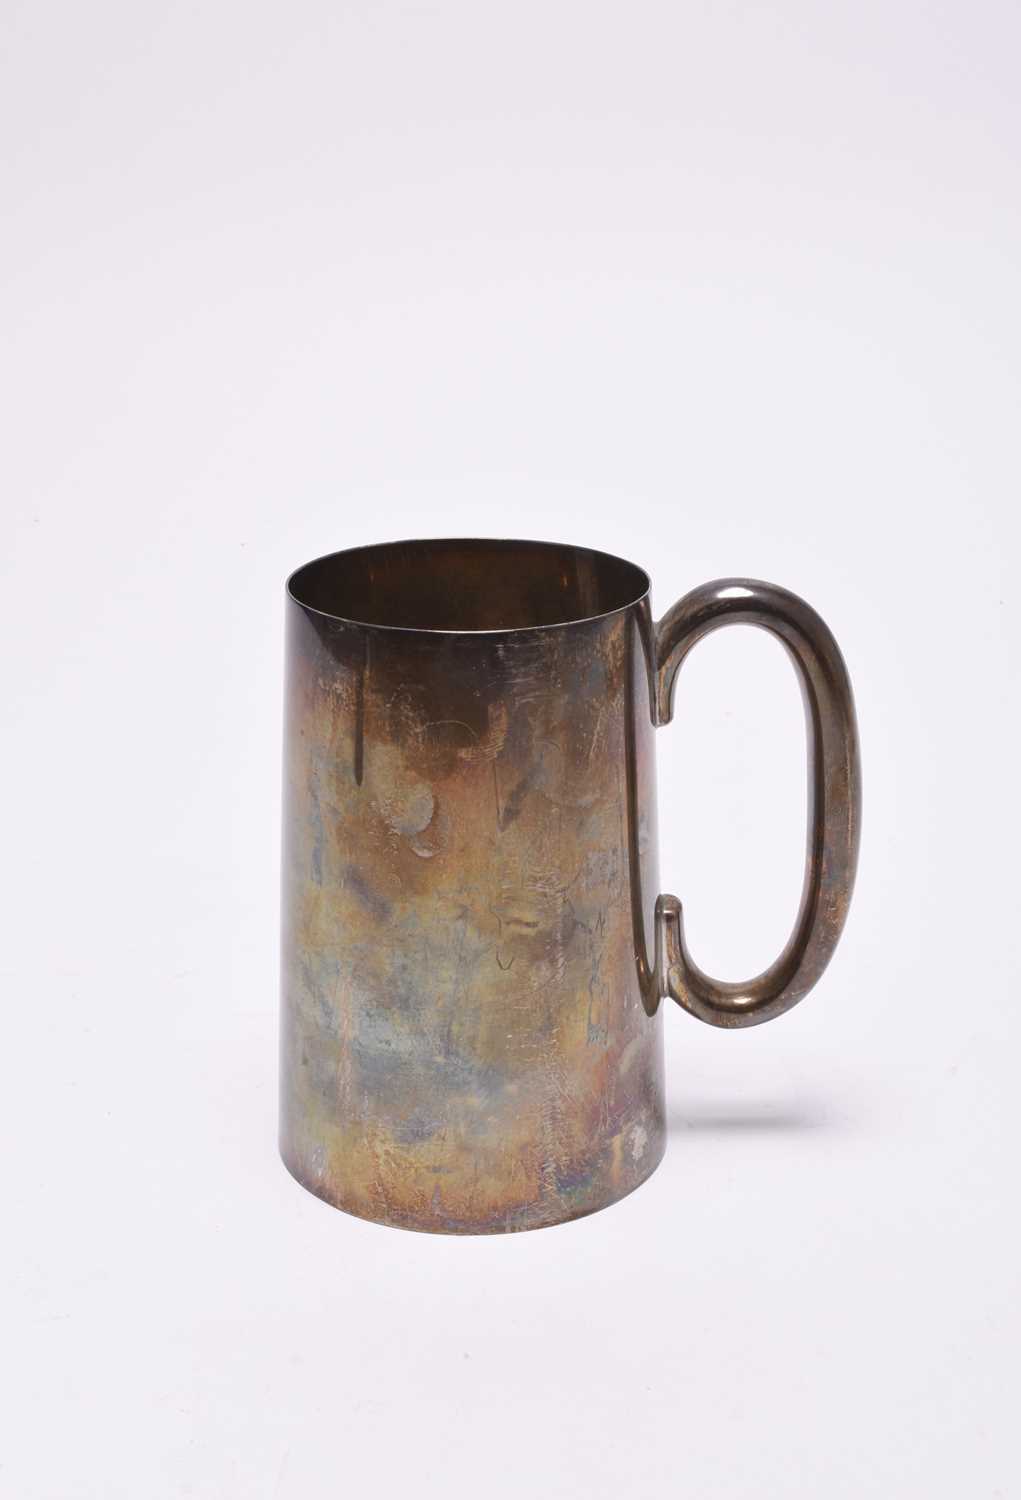 A silver mug